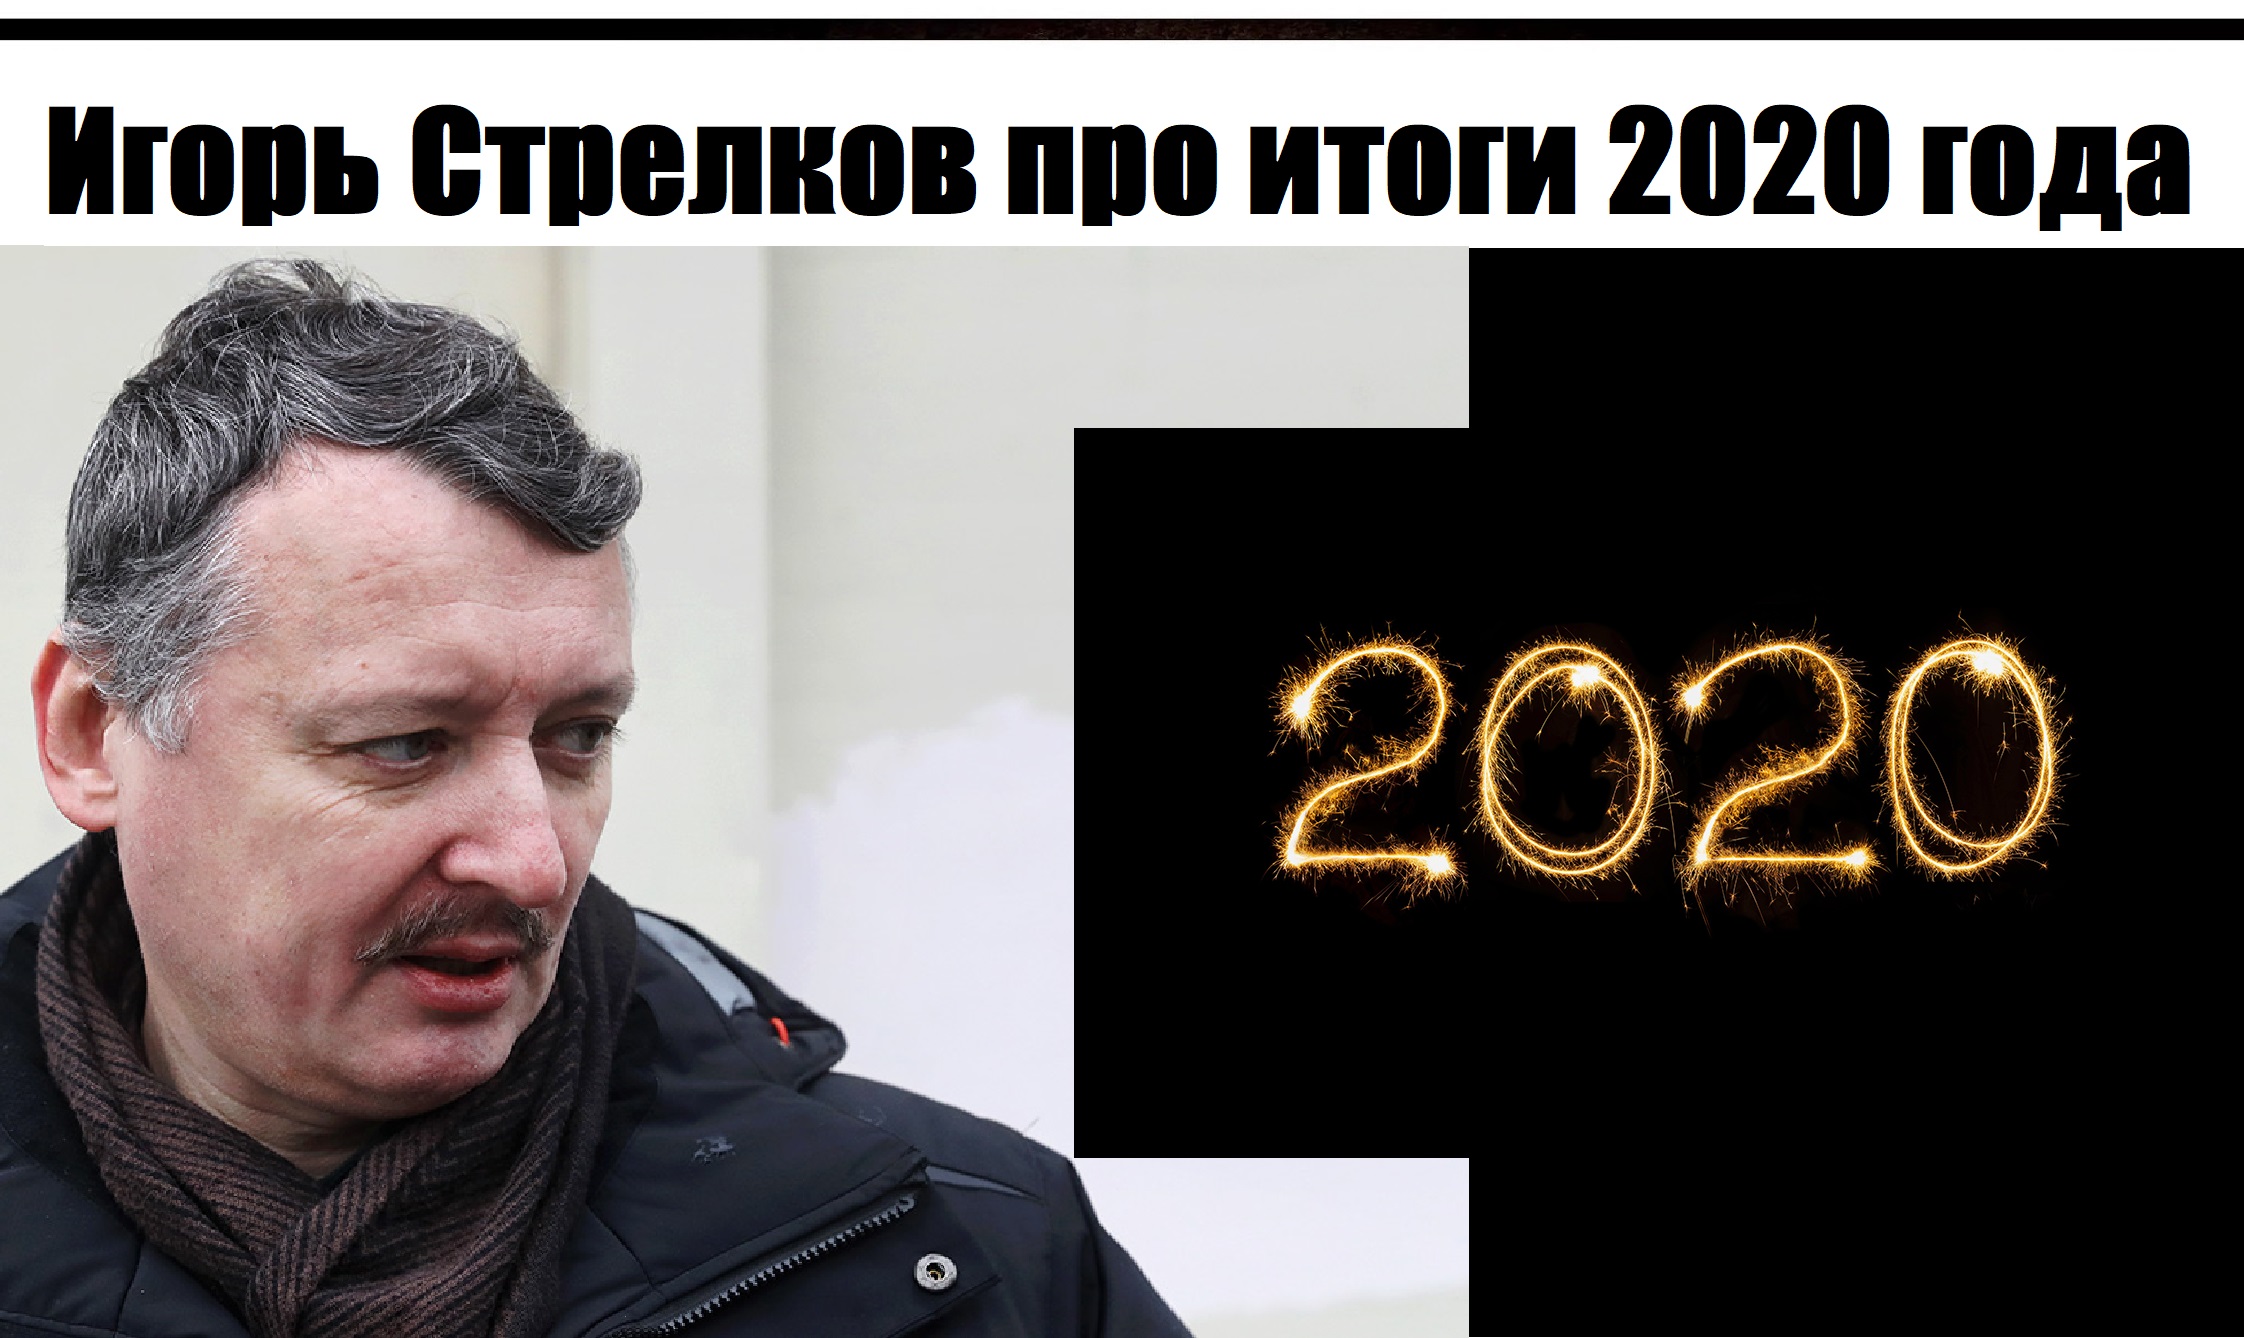 Игорь Стрелков итоги 2020